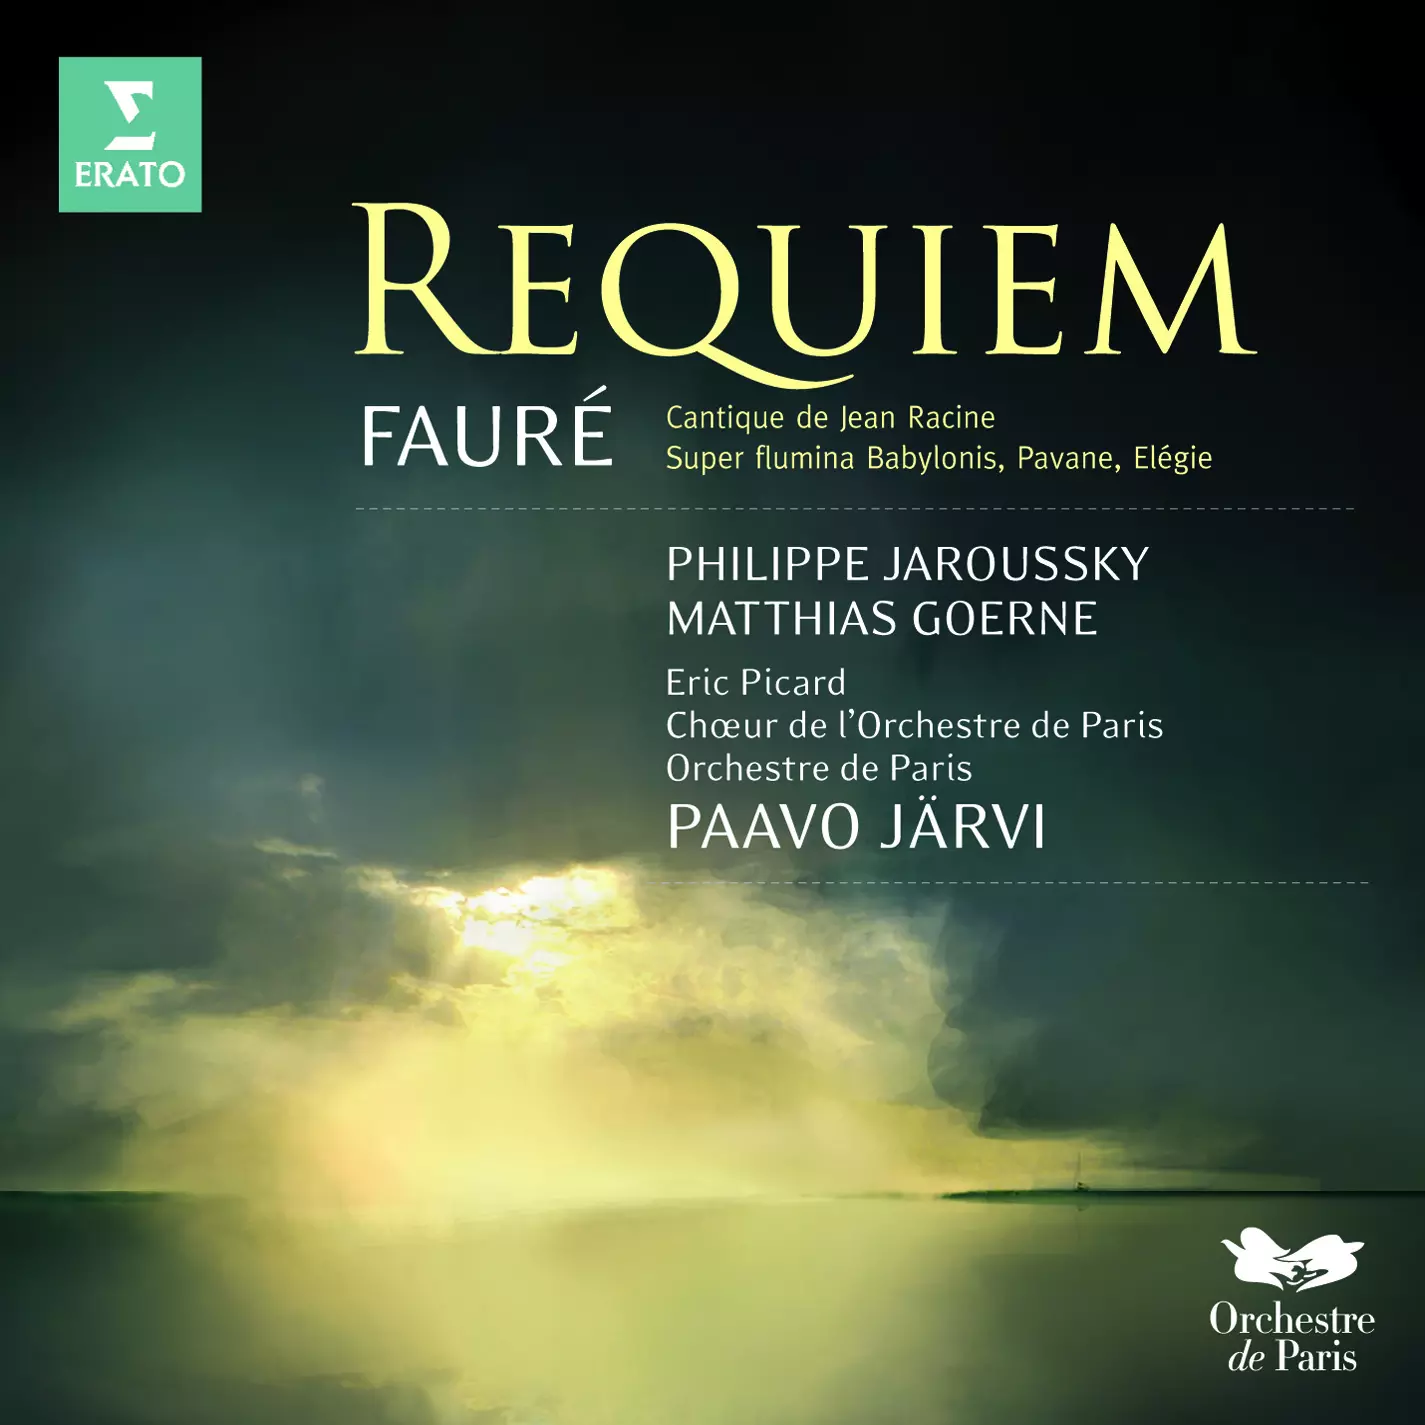 Fauré Requiem, Cantique de Jean Racine